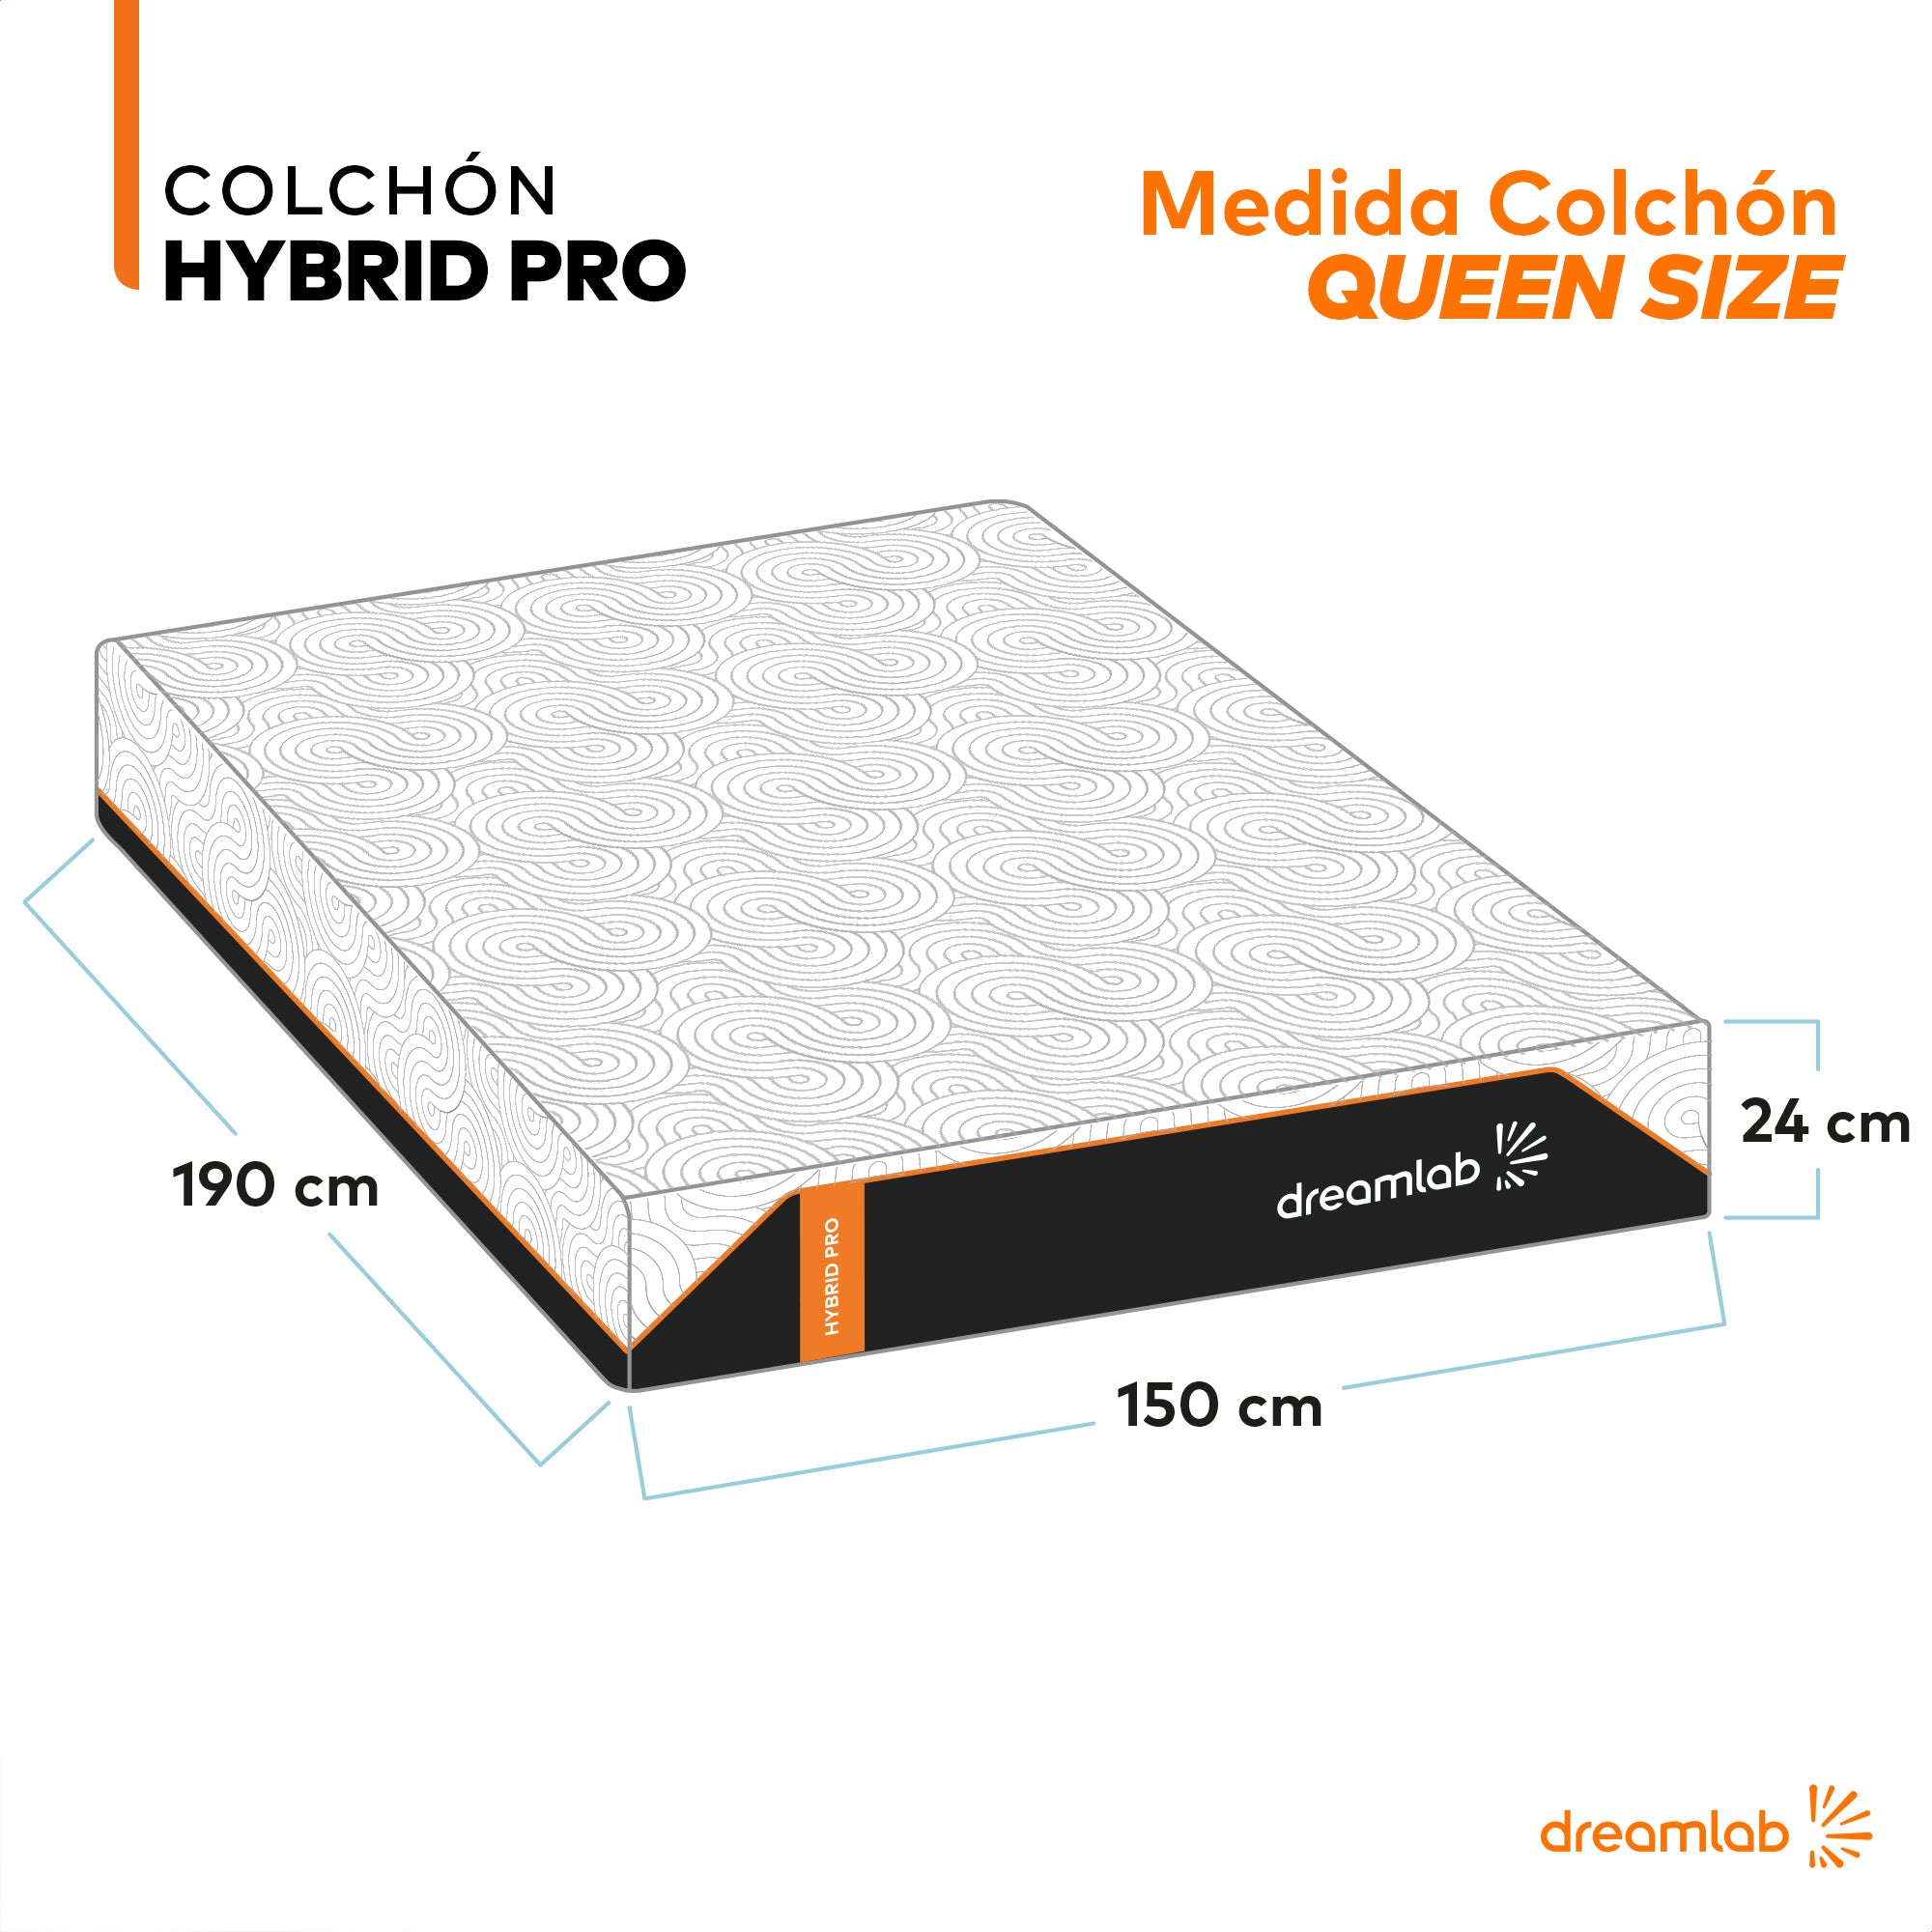 Colchón Hybrid Pro